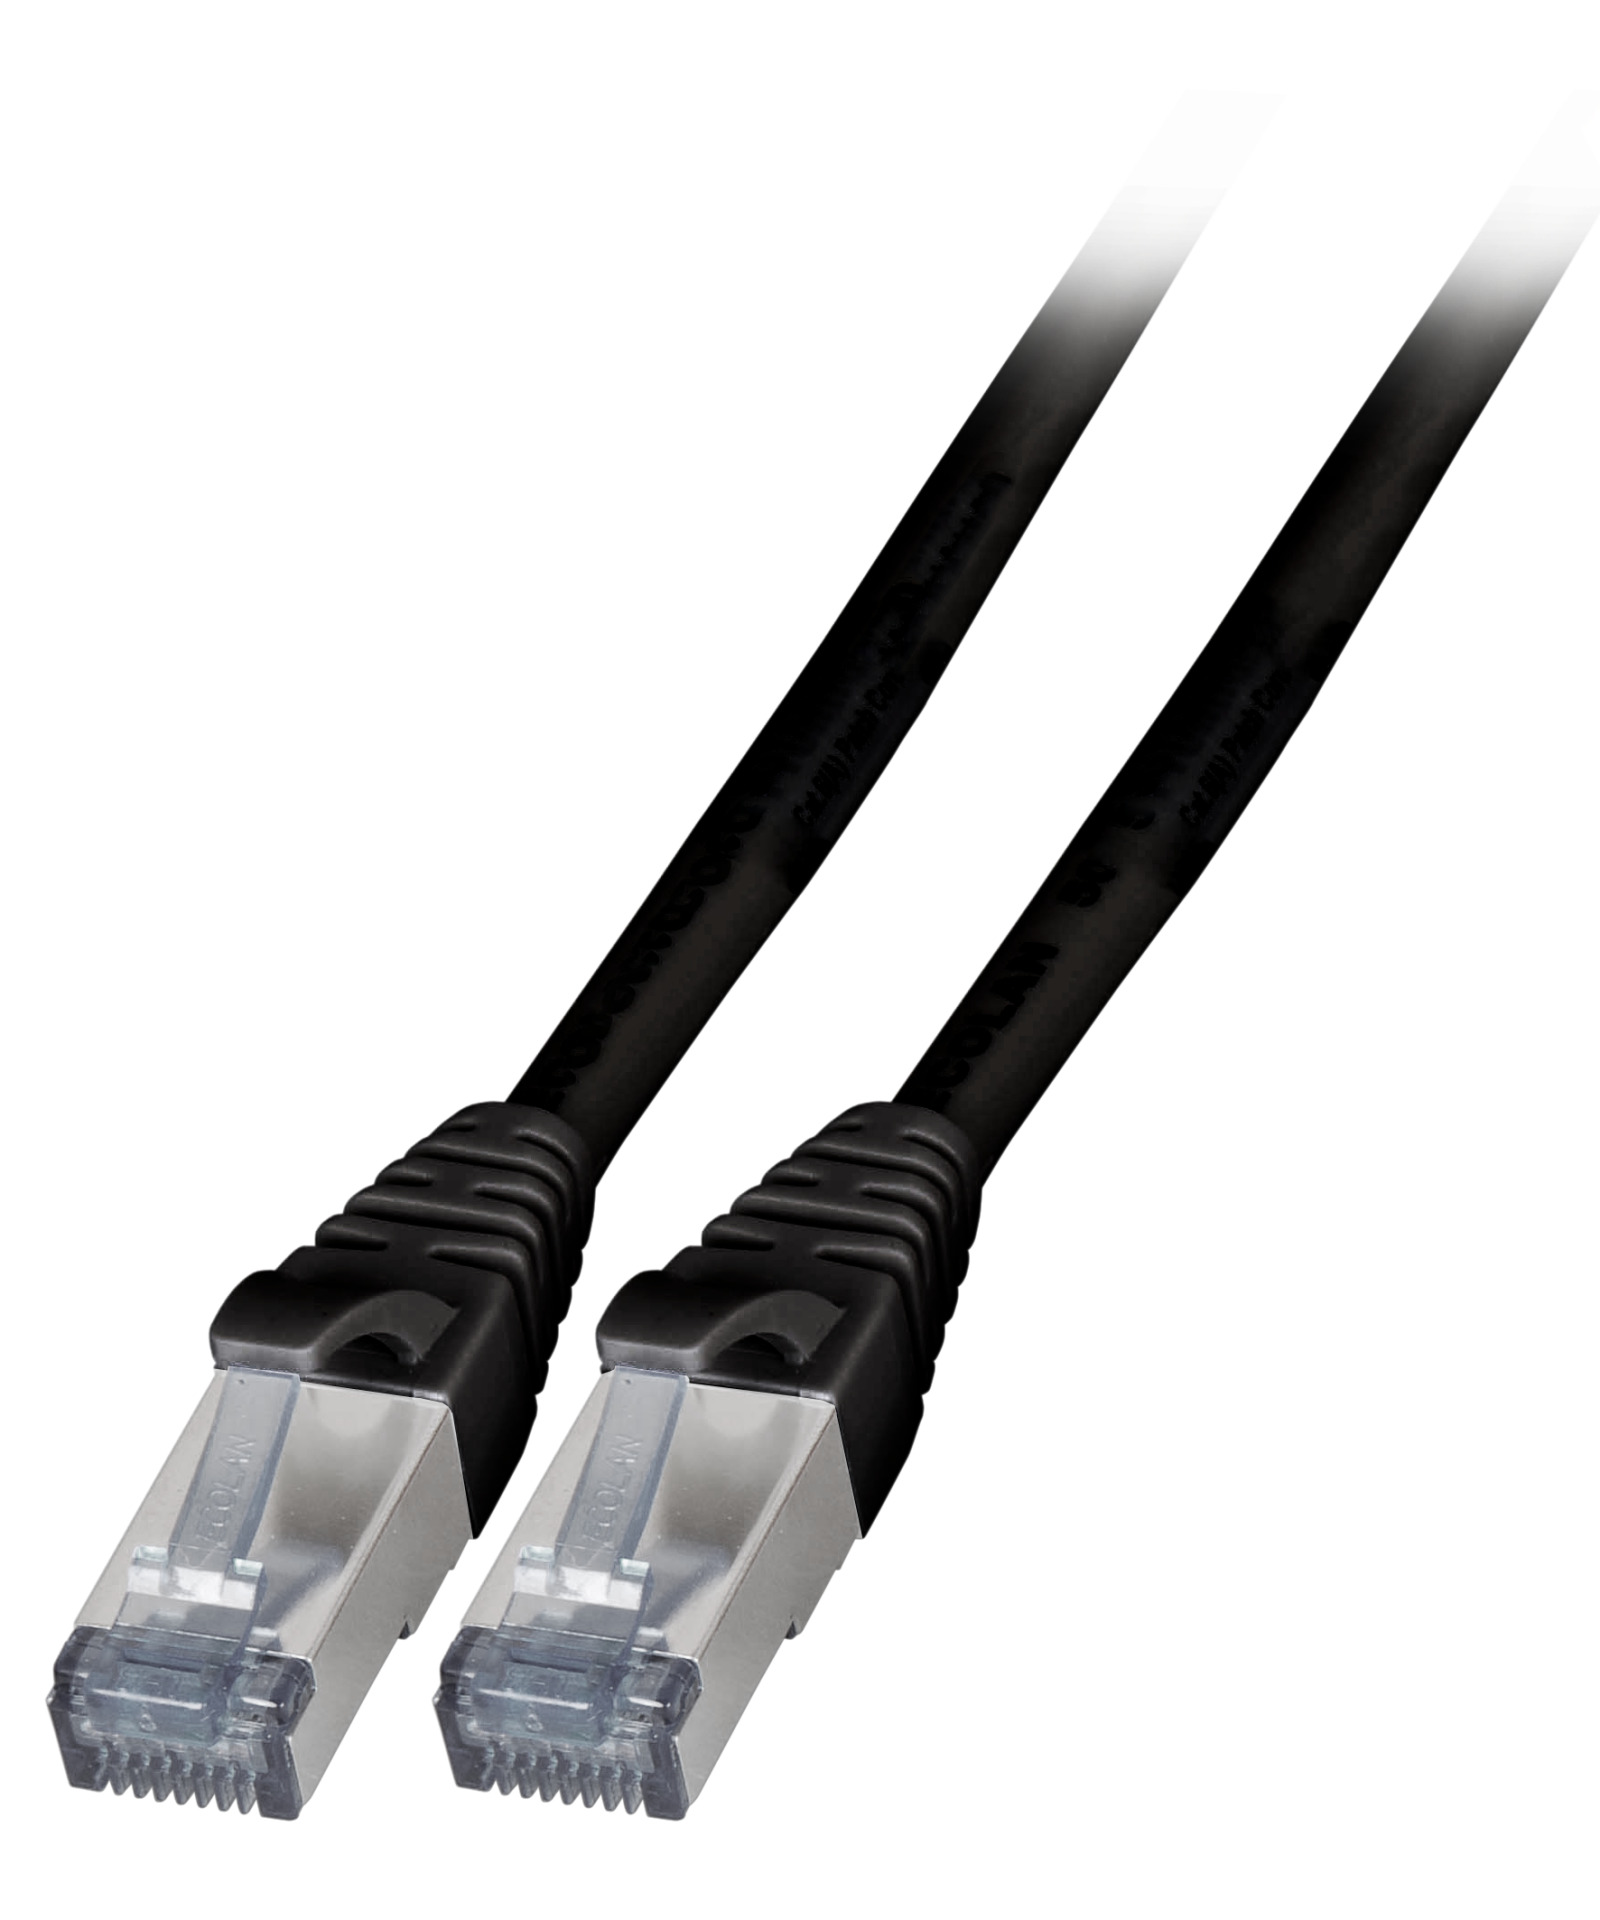 RJ45 Patch cable S/FTP, Cat.6A, TPE, 2m, black